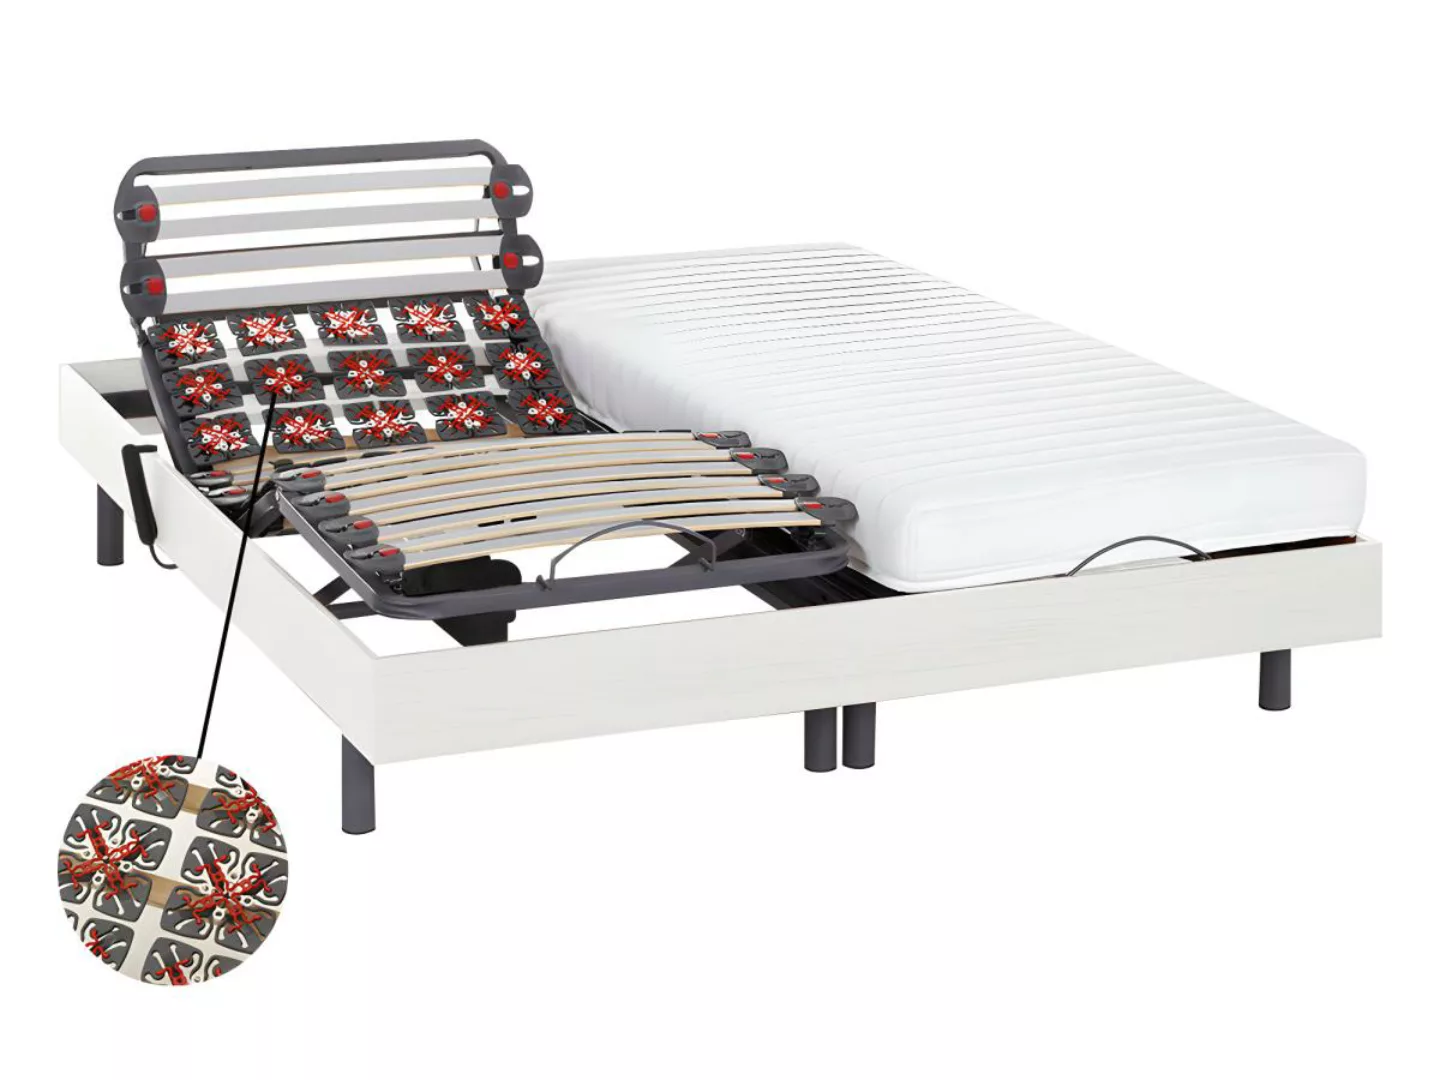 Relaxbett elektrisch - Latexmatratzen - PANDORA II von DREAMEA - mit OKIN-M günstig online kaufen